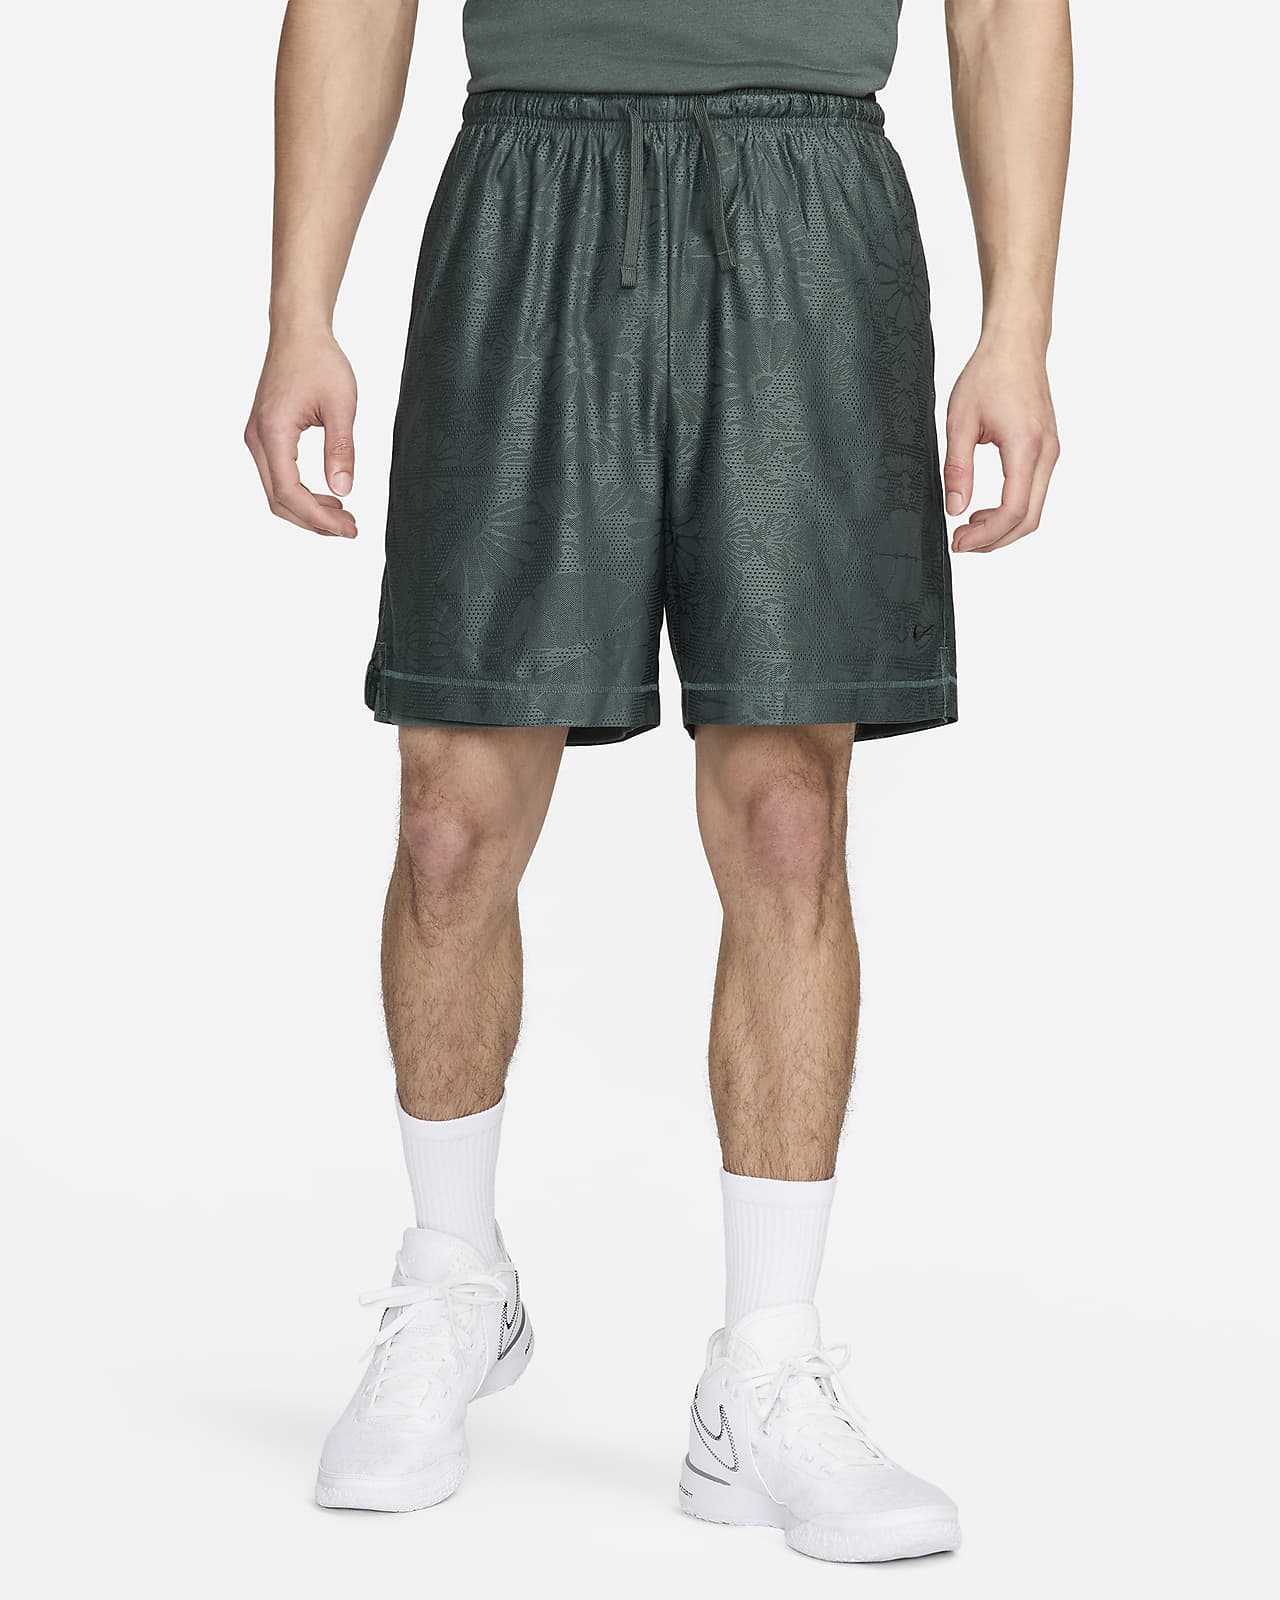 Vendbare Nike Standard Issue Dri-FIT--basketballshorts (15 cm) til mænd